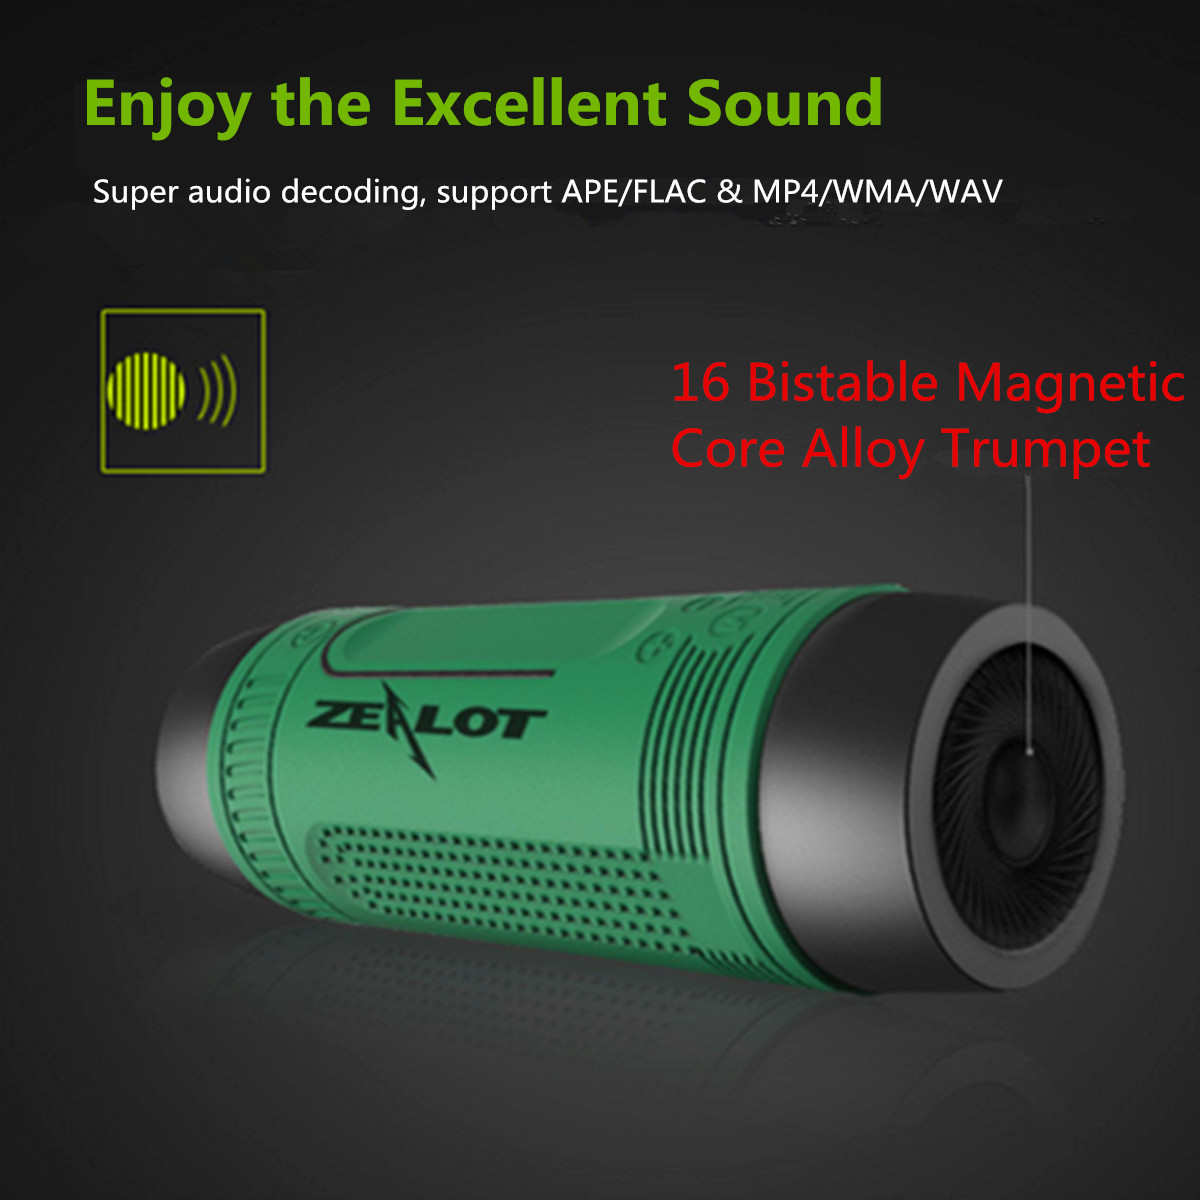 Zealot-S1-Wireless-bluetooth-Speaker-Dustproof-Waterproof-Flashlight-FM-Power-Bank-Multi-F-986046